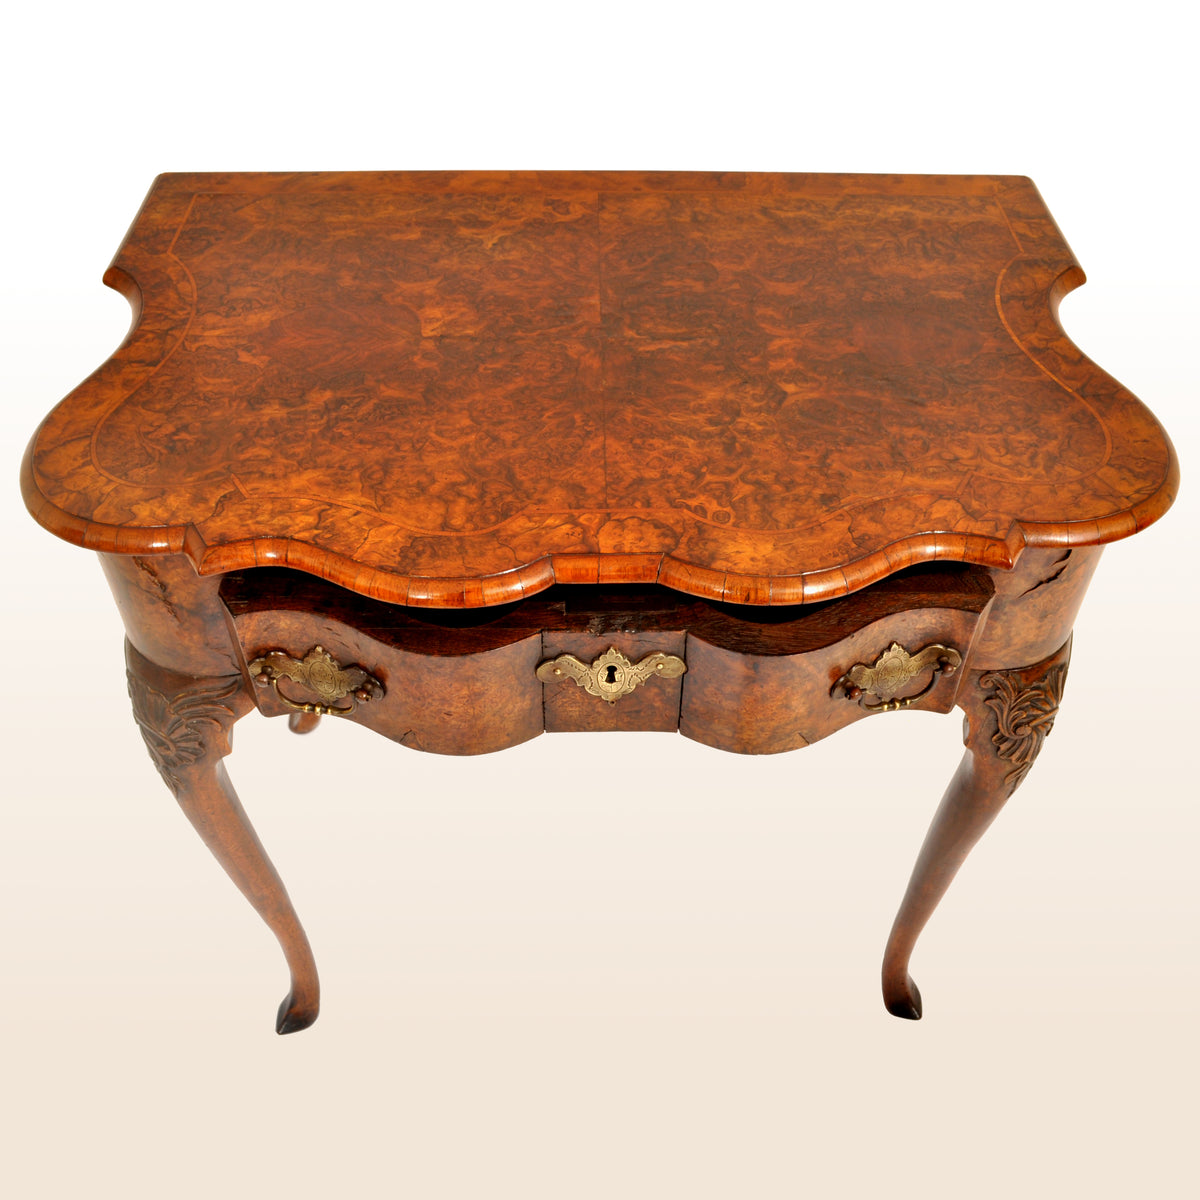 Antique Queen Anne Serpentine Burl Yew & Walnut Inlaid Side Table / Lowboy, circa 1710